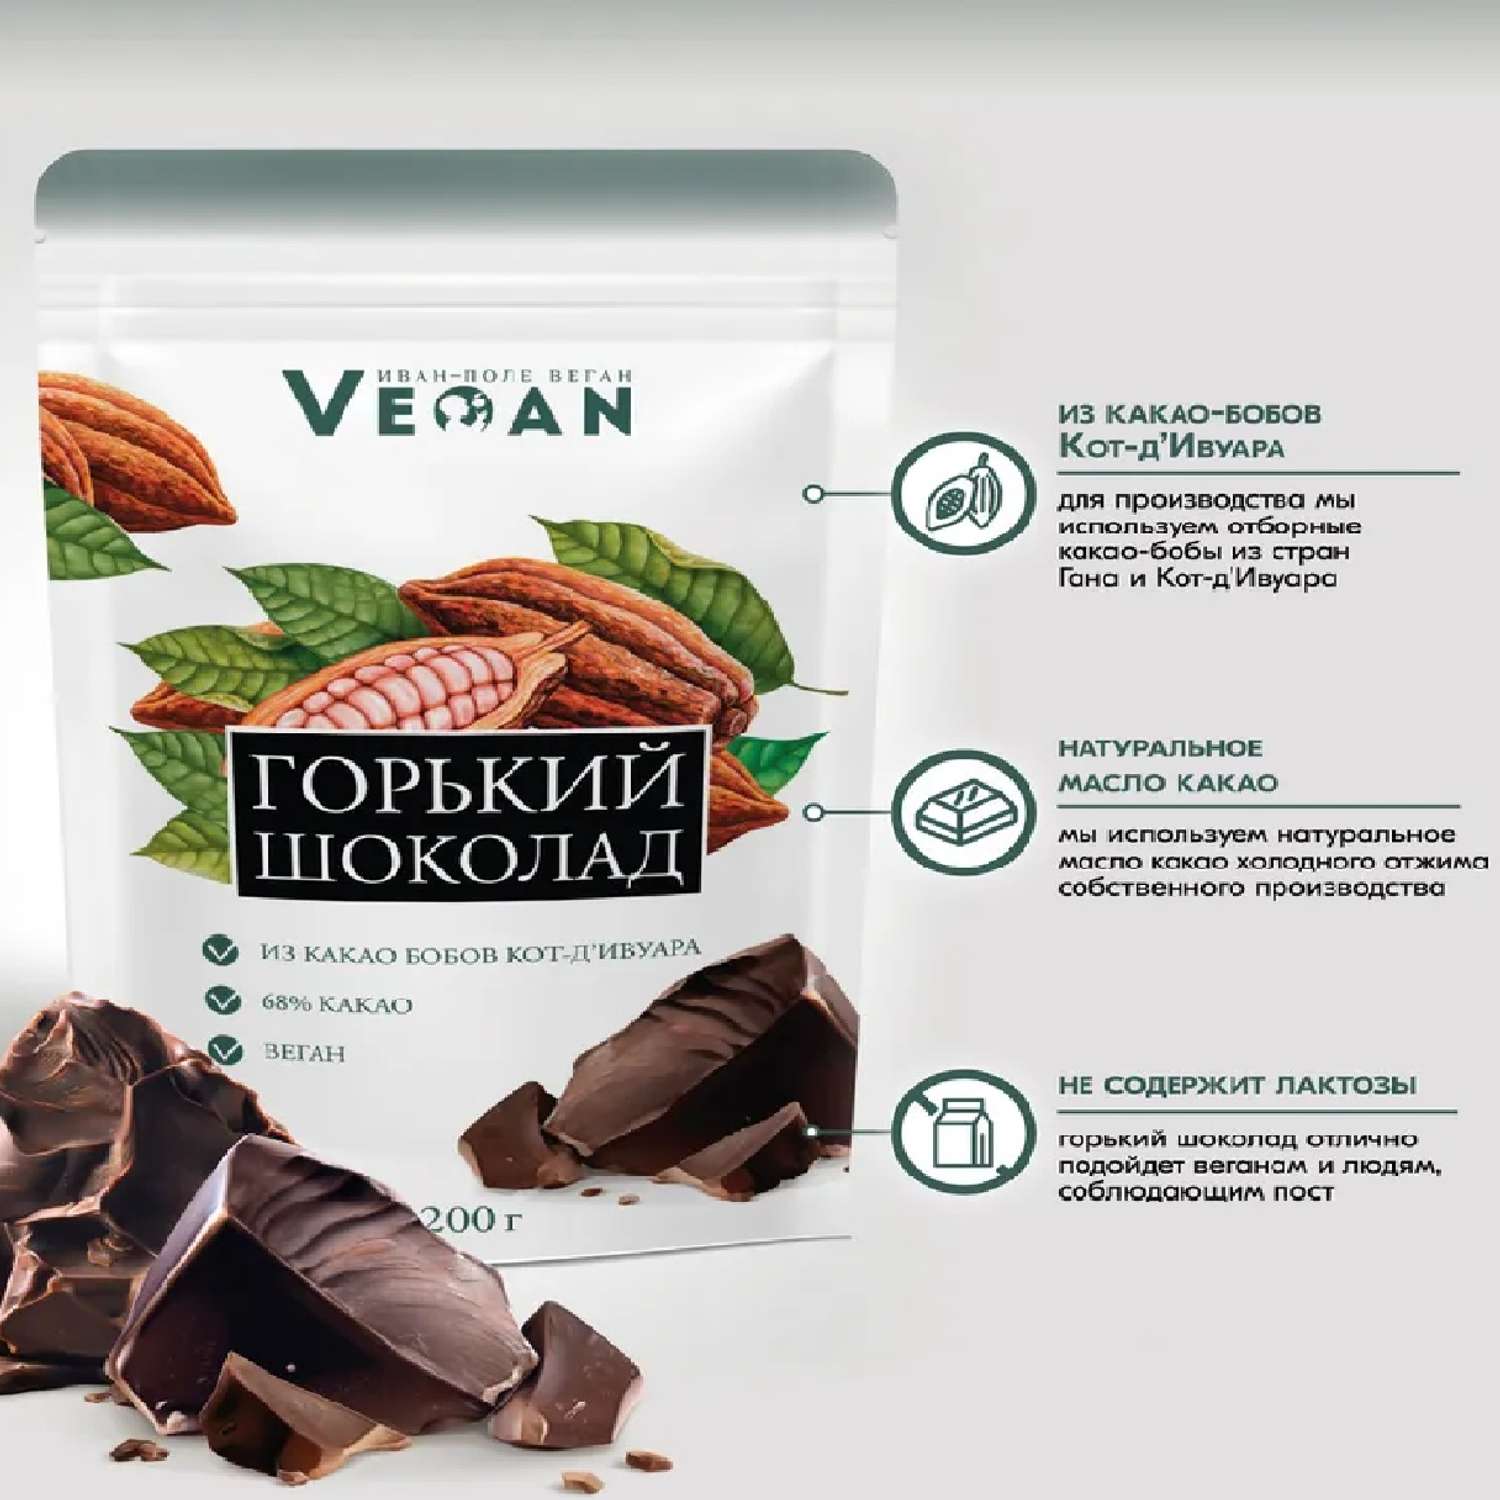 Горький шоколад Иван-поле крафтовый на натуральном какао масле 200 г - фото 3